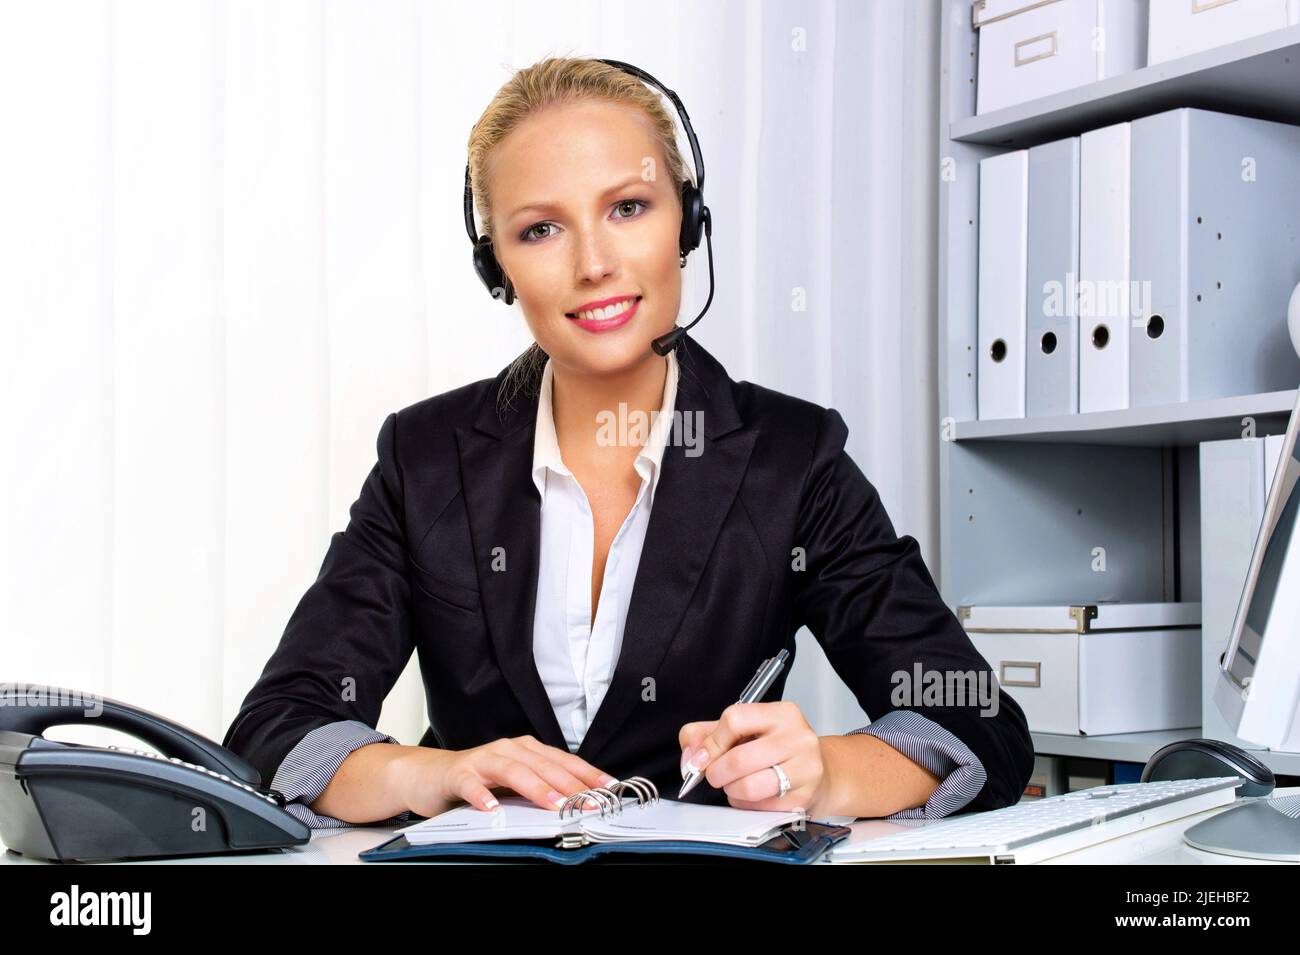 Eine freundliche junge Frau mit Headset im Kundendienstcenter telefoniert mit einem Kunden. Freundliche Hotline, Mitarbeiterin, Call Center, Sekretäri Stock Photo